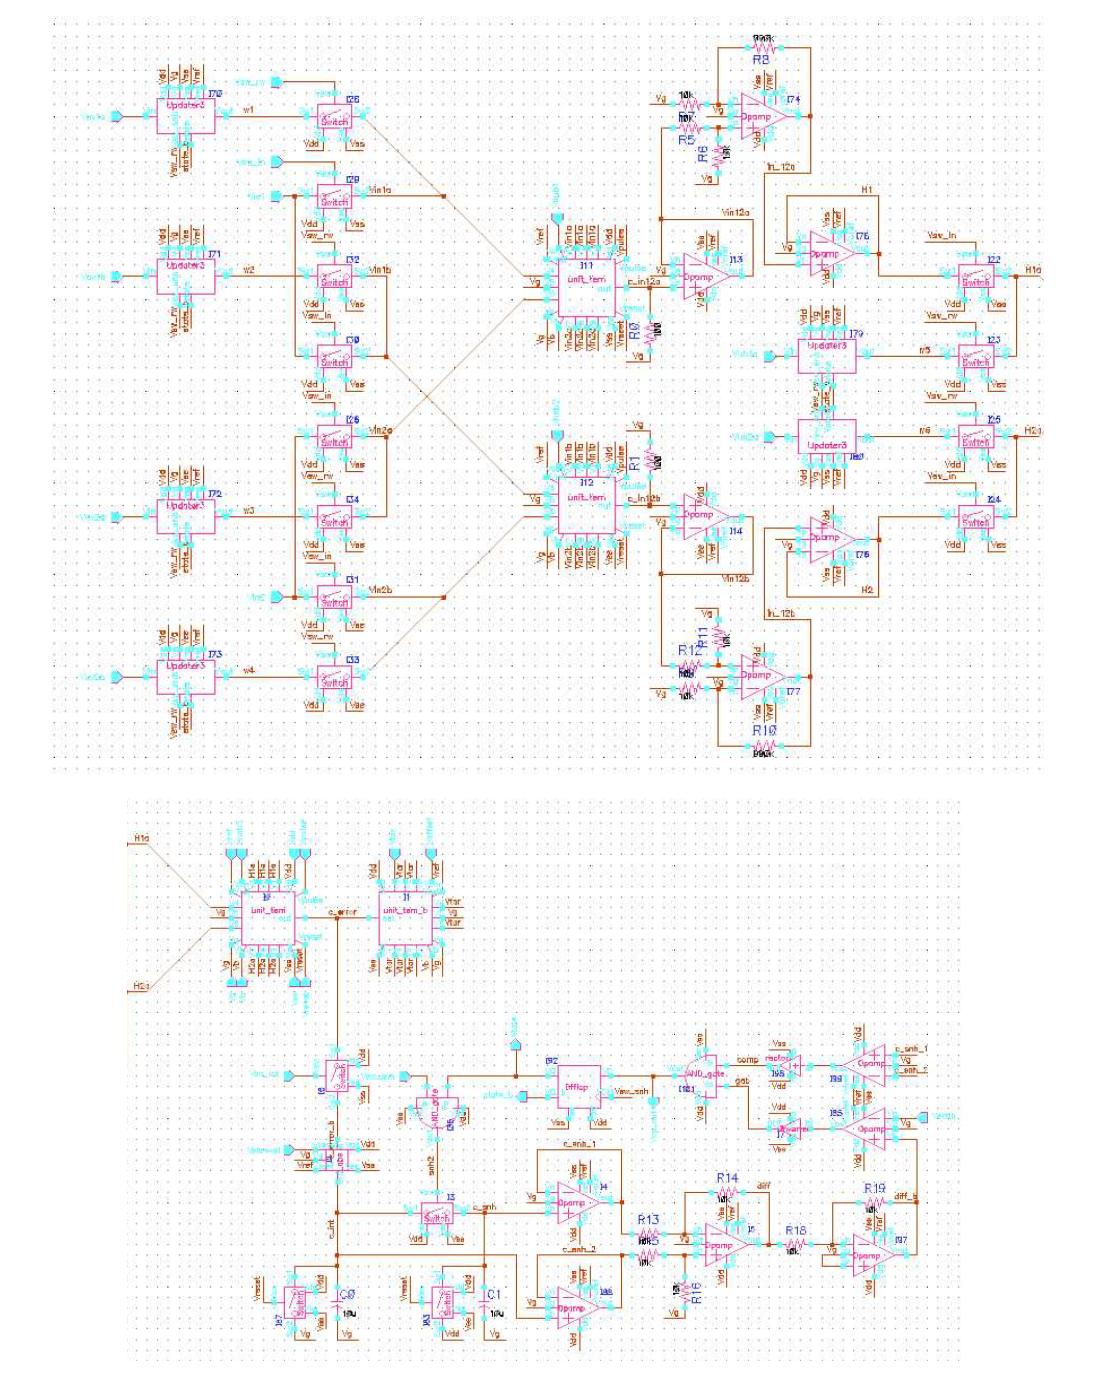 설계된 인공신경망 회로 Full Schematic (XOR 문제의 예)